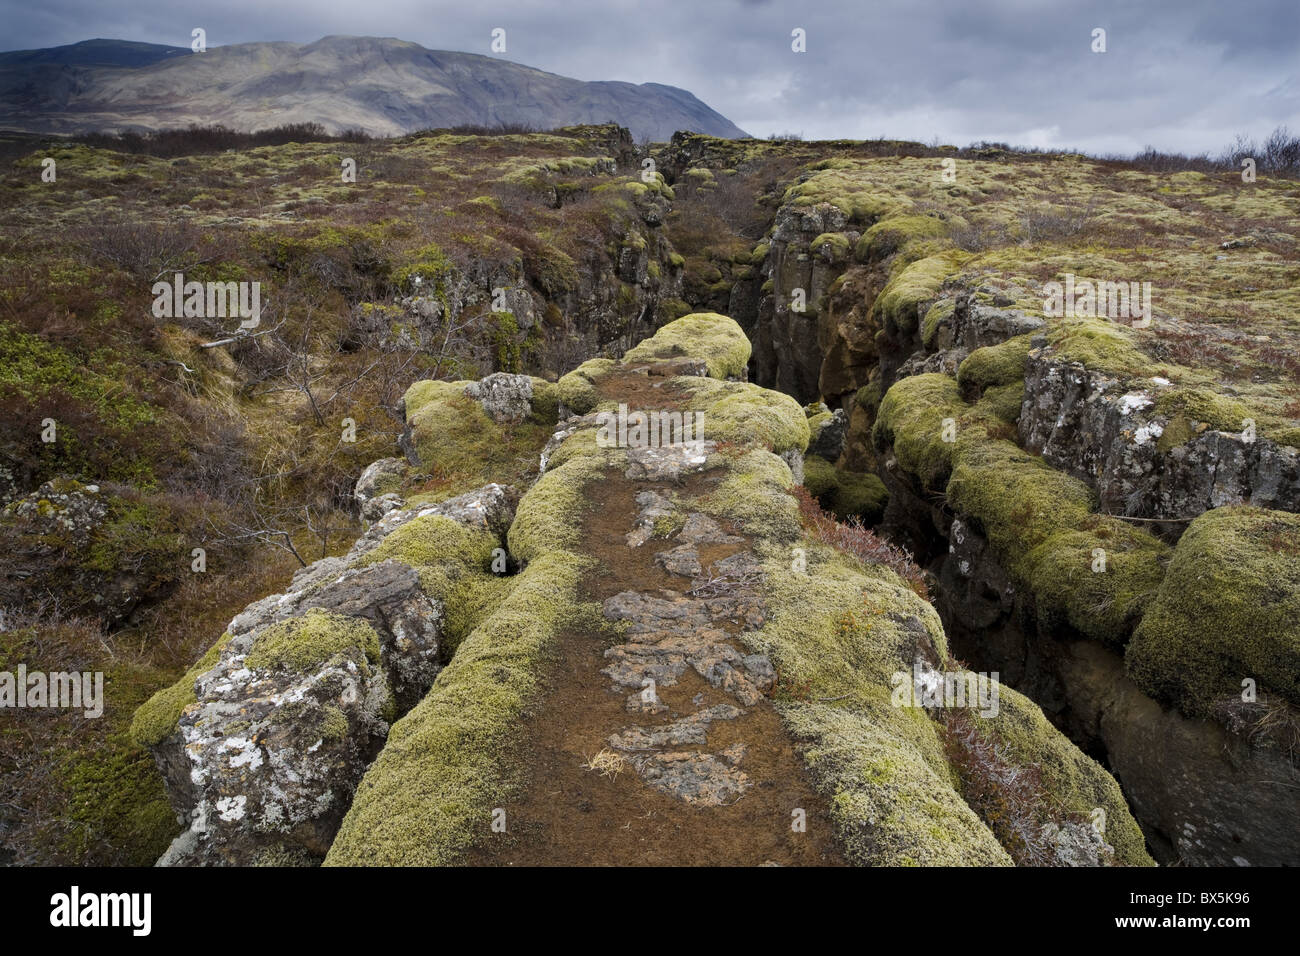 Défaut dans le paysage provoquée par la dérive, au Parc National de Thingvellir, près de Reykjavik, Islande Banque D'Images